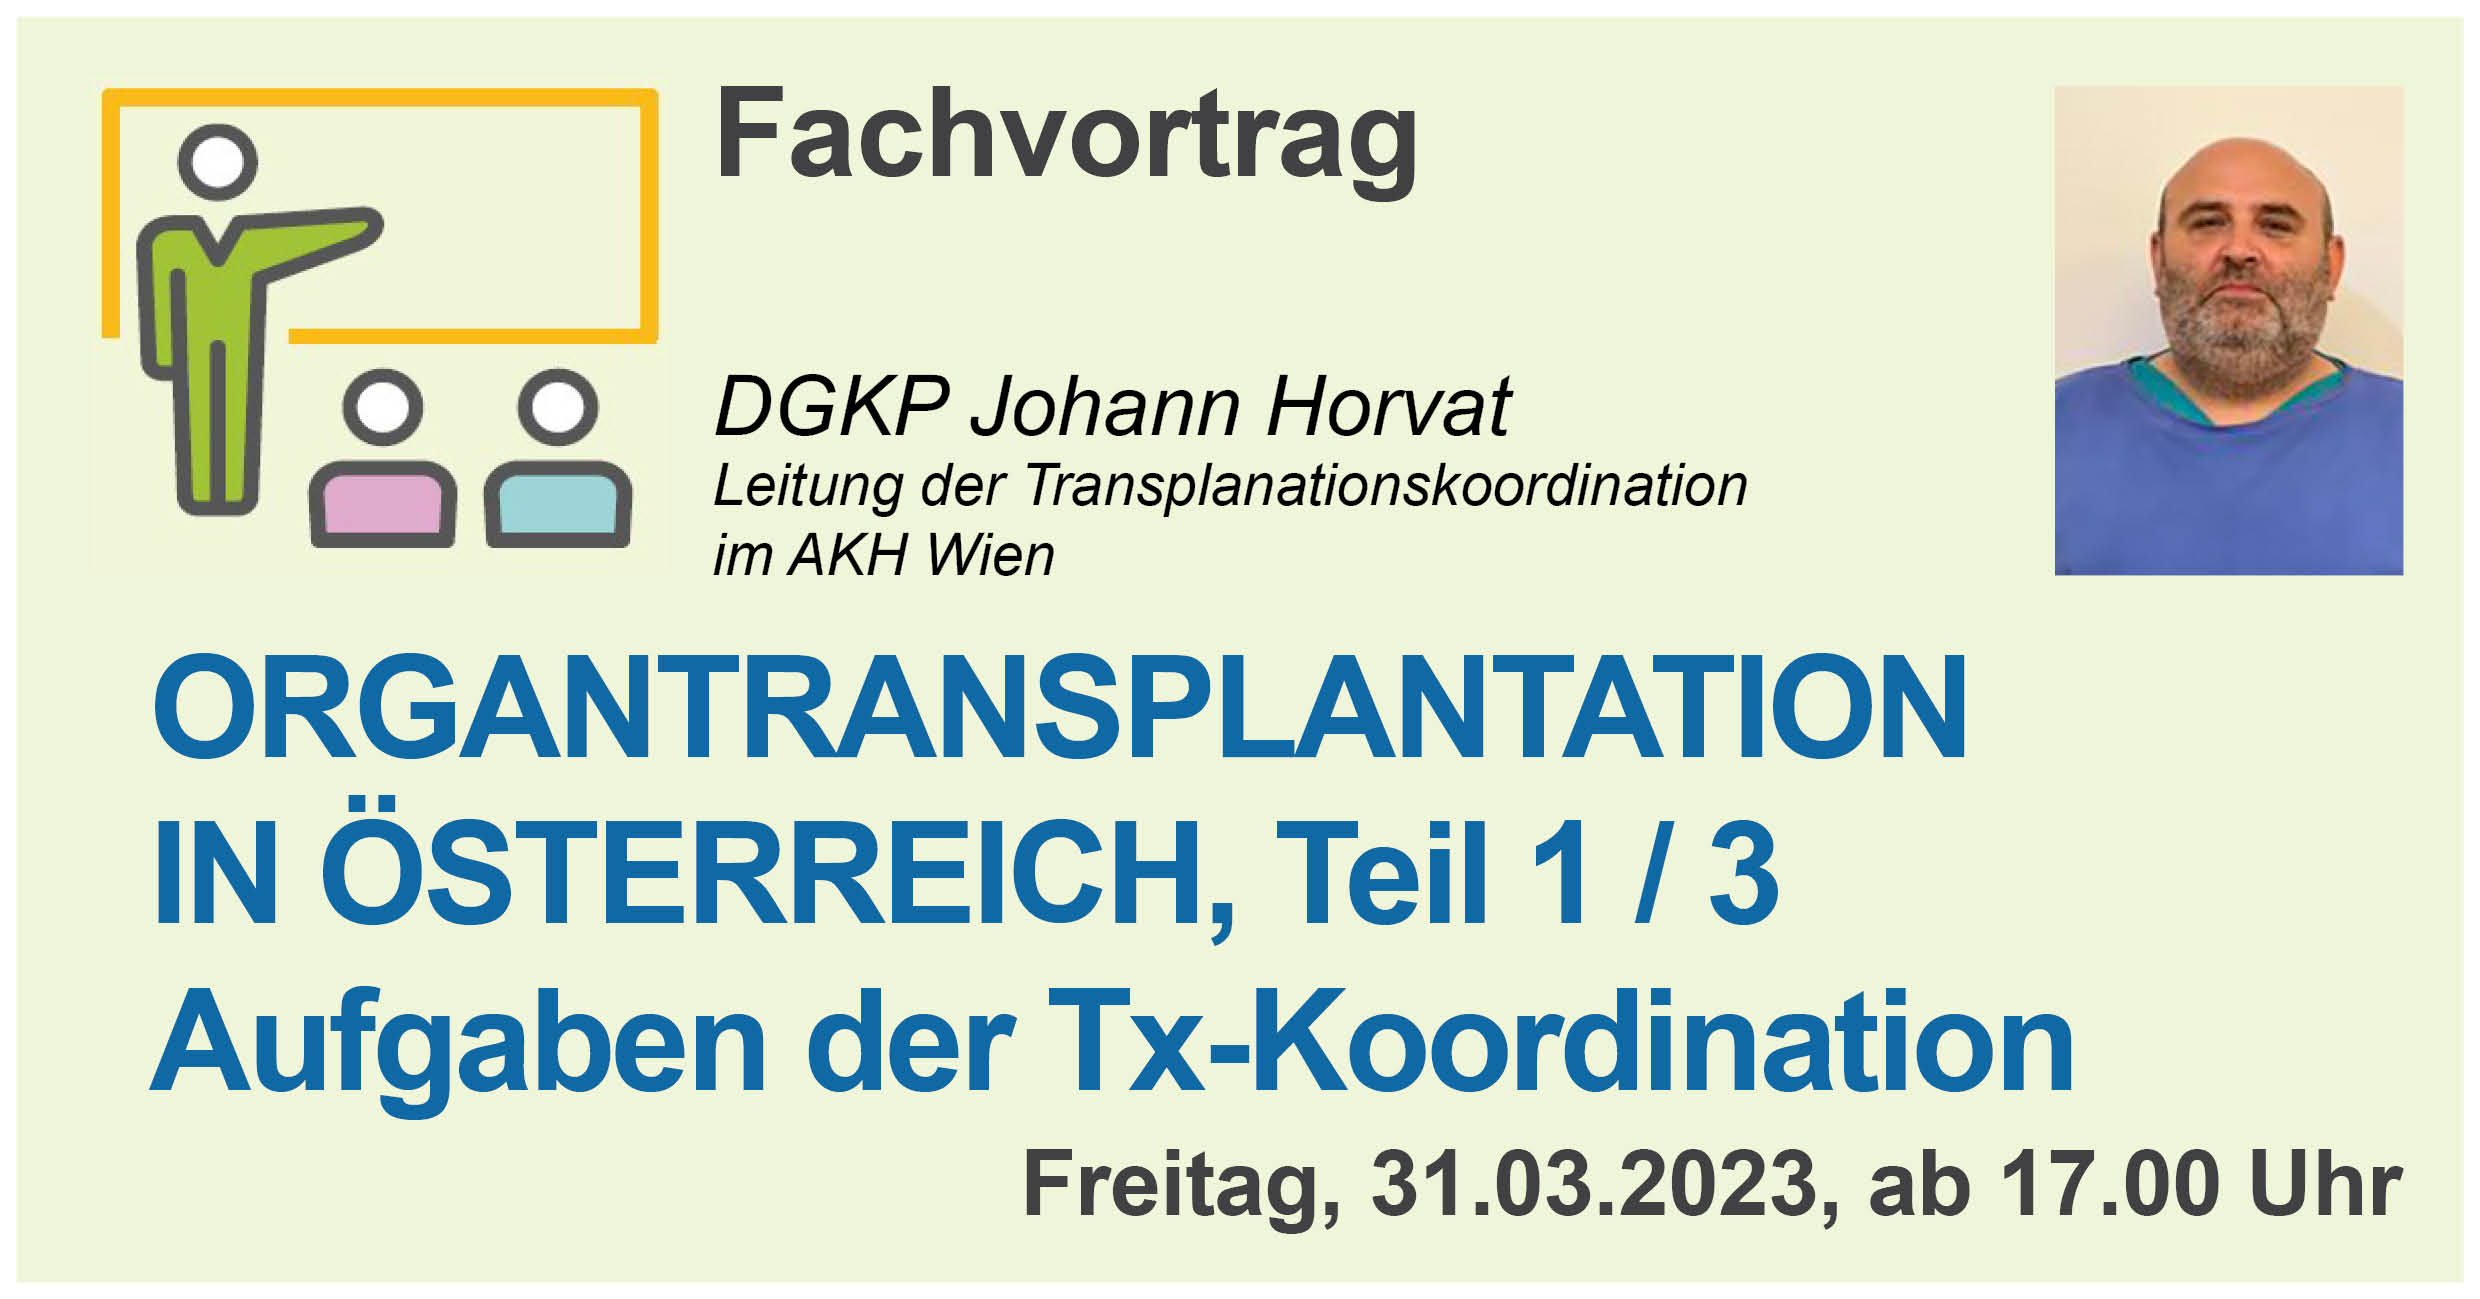 Online Fachvortrag "Organtransplantation in Österreich", erster Teil am 31.03.2023